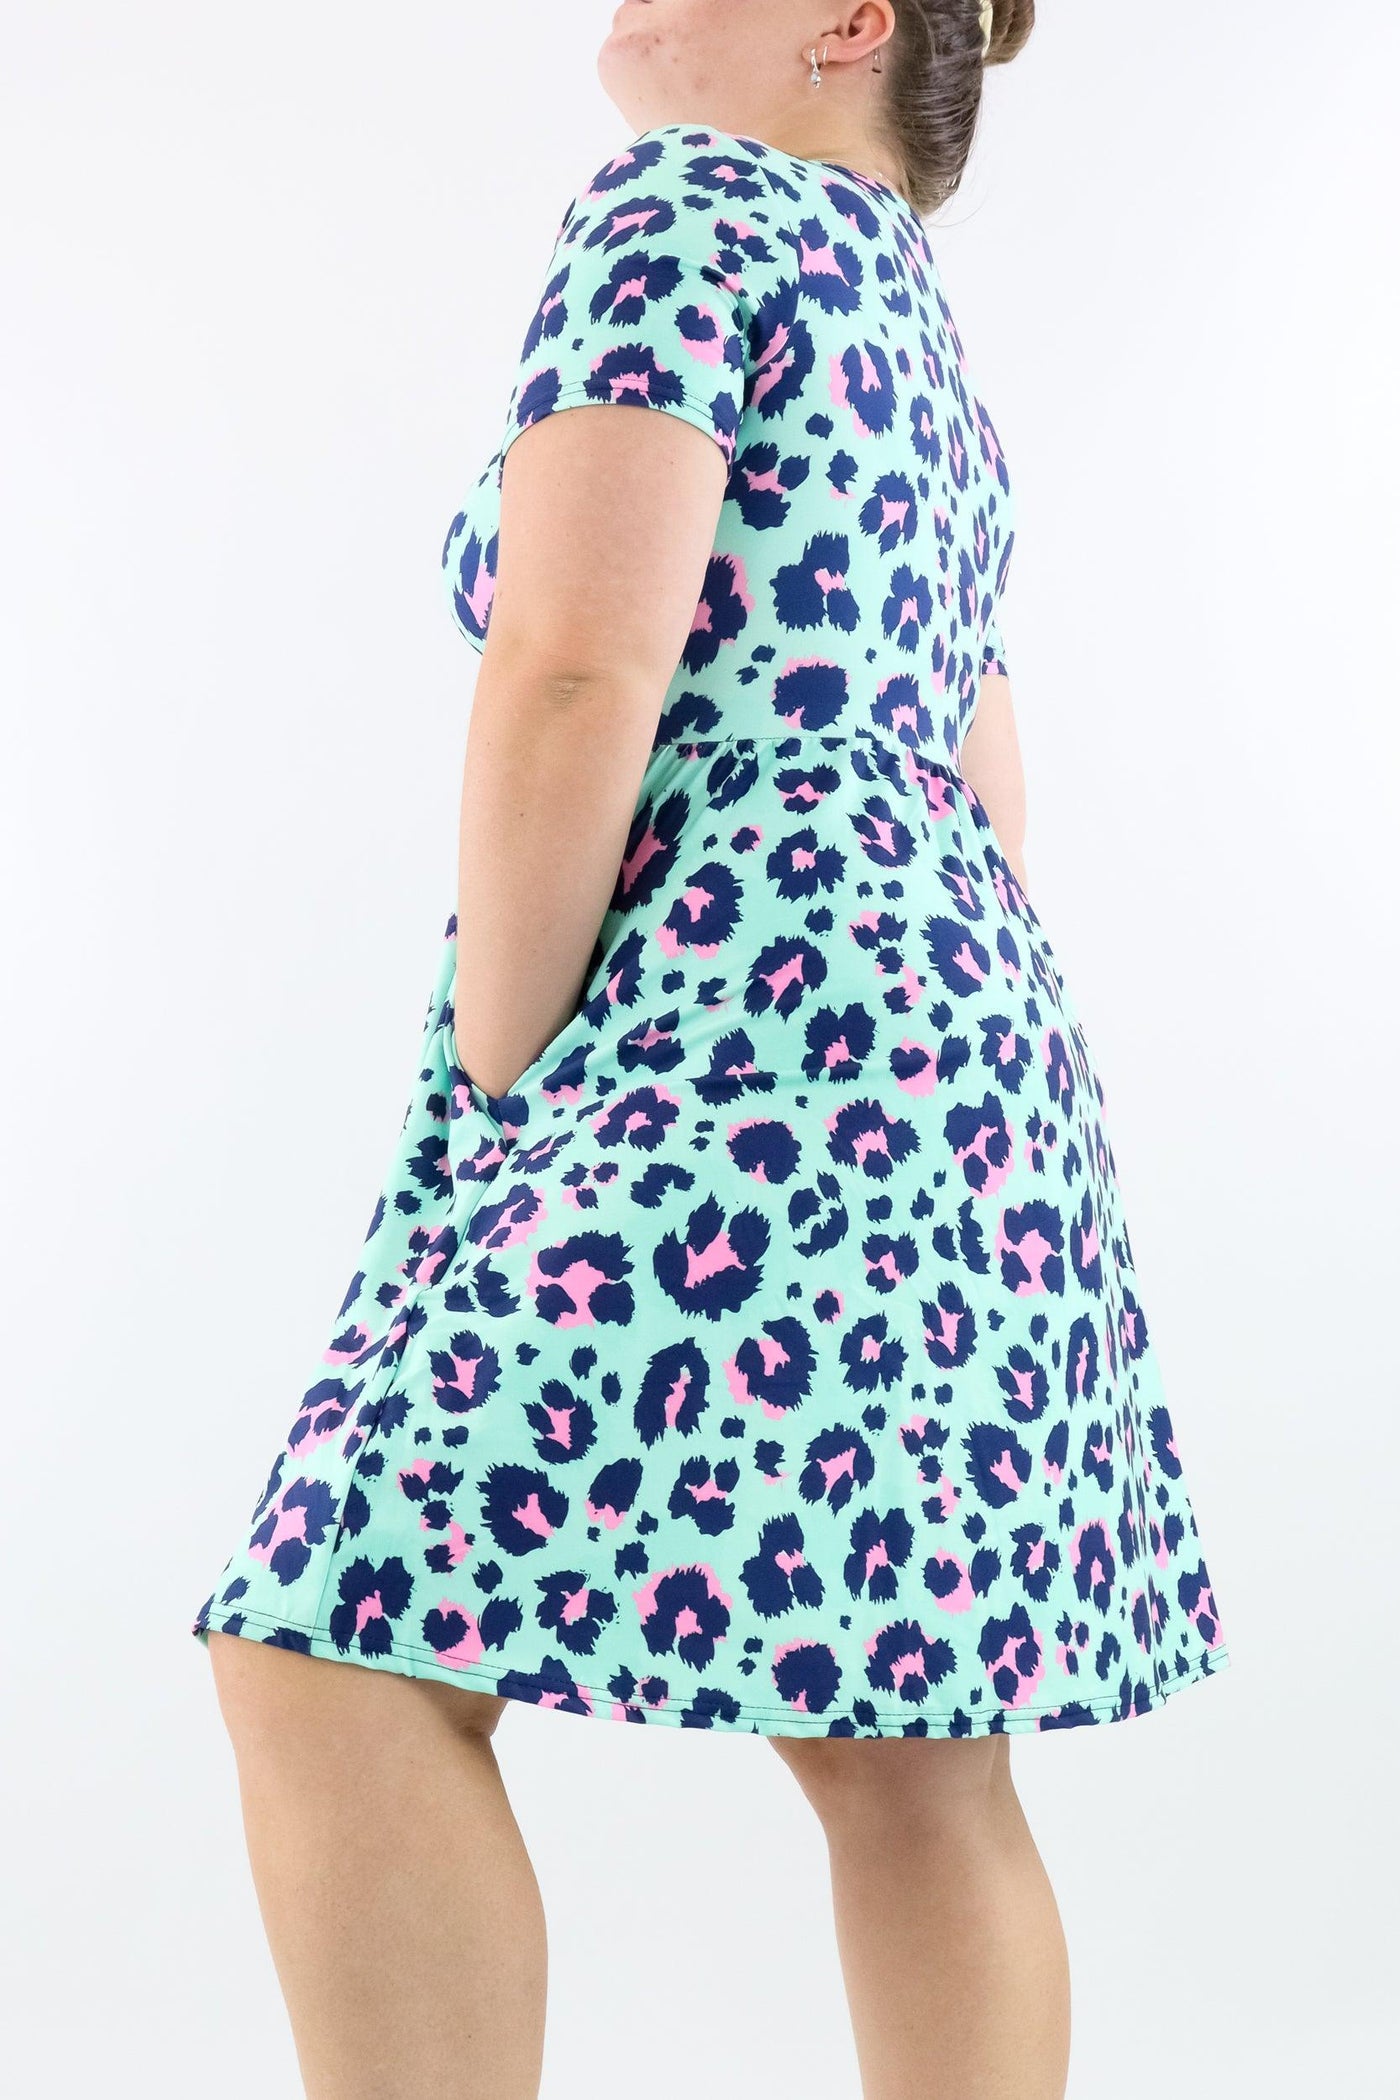 Minty Leopard - Short Sleeve Skater Dress - Knee Length - Side Pockets - Pawlie